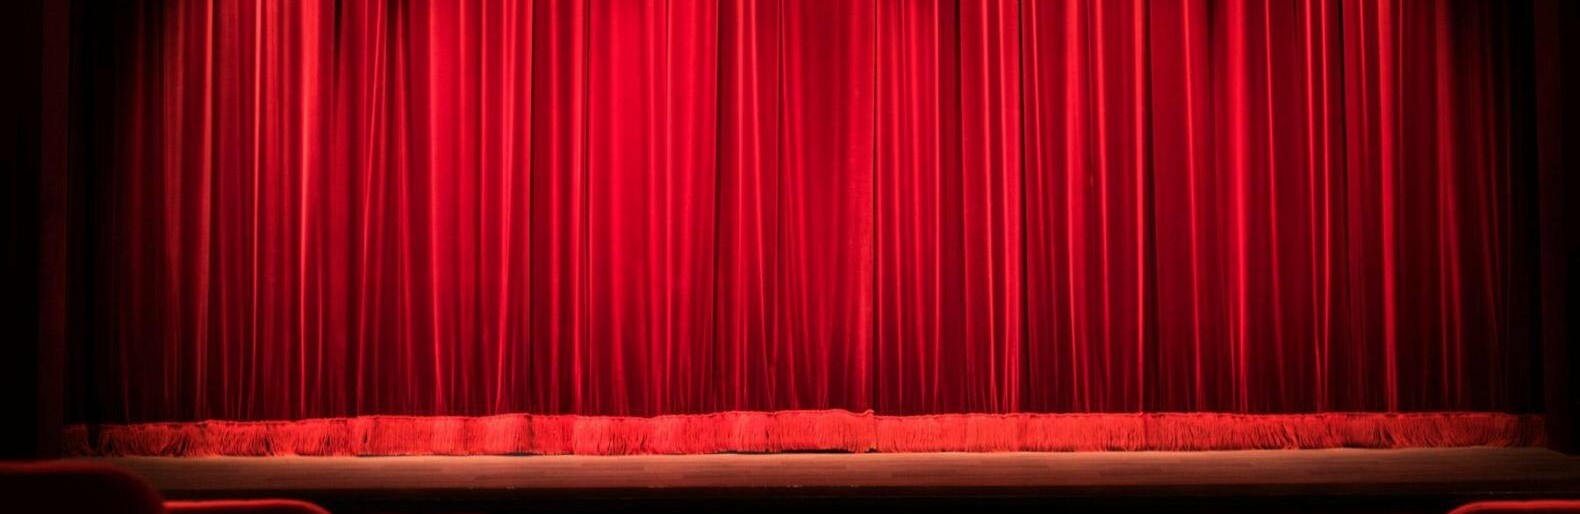 У Запоріжжі замість двох муніципальних театрів з’явиться новий комунальний заклад «Дім актора»